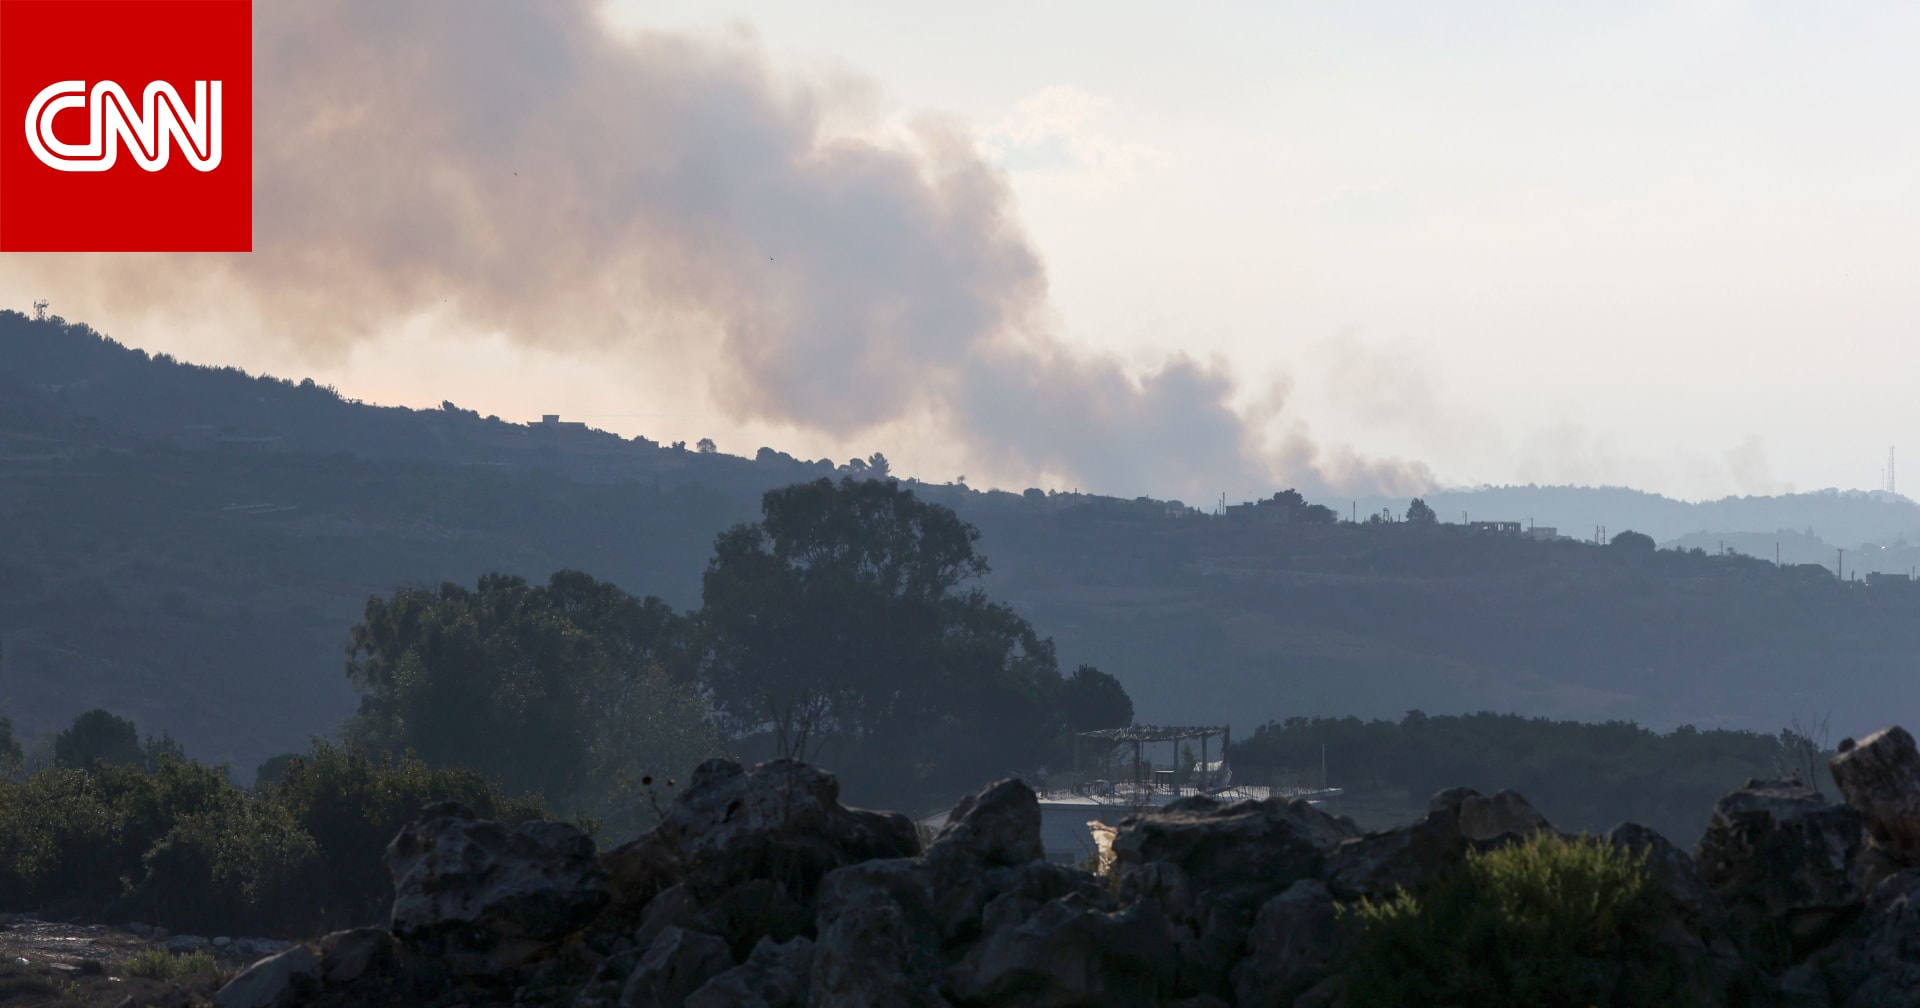 مقتل مصور وكالة "رويترز" وإصابة 6 صحفيين آخرين خلال تغطية الحرب في جنوب لبنان